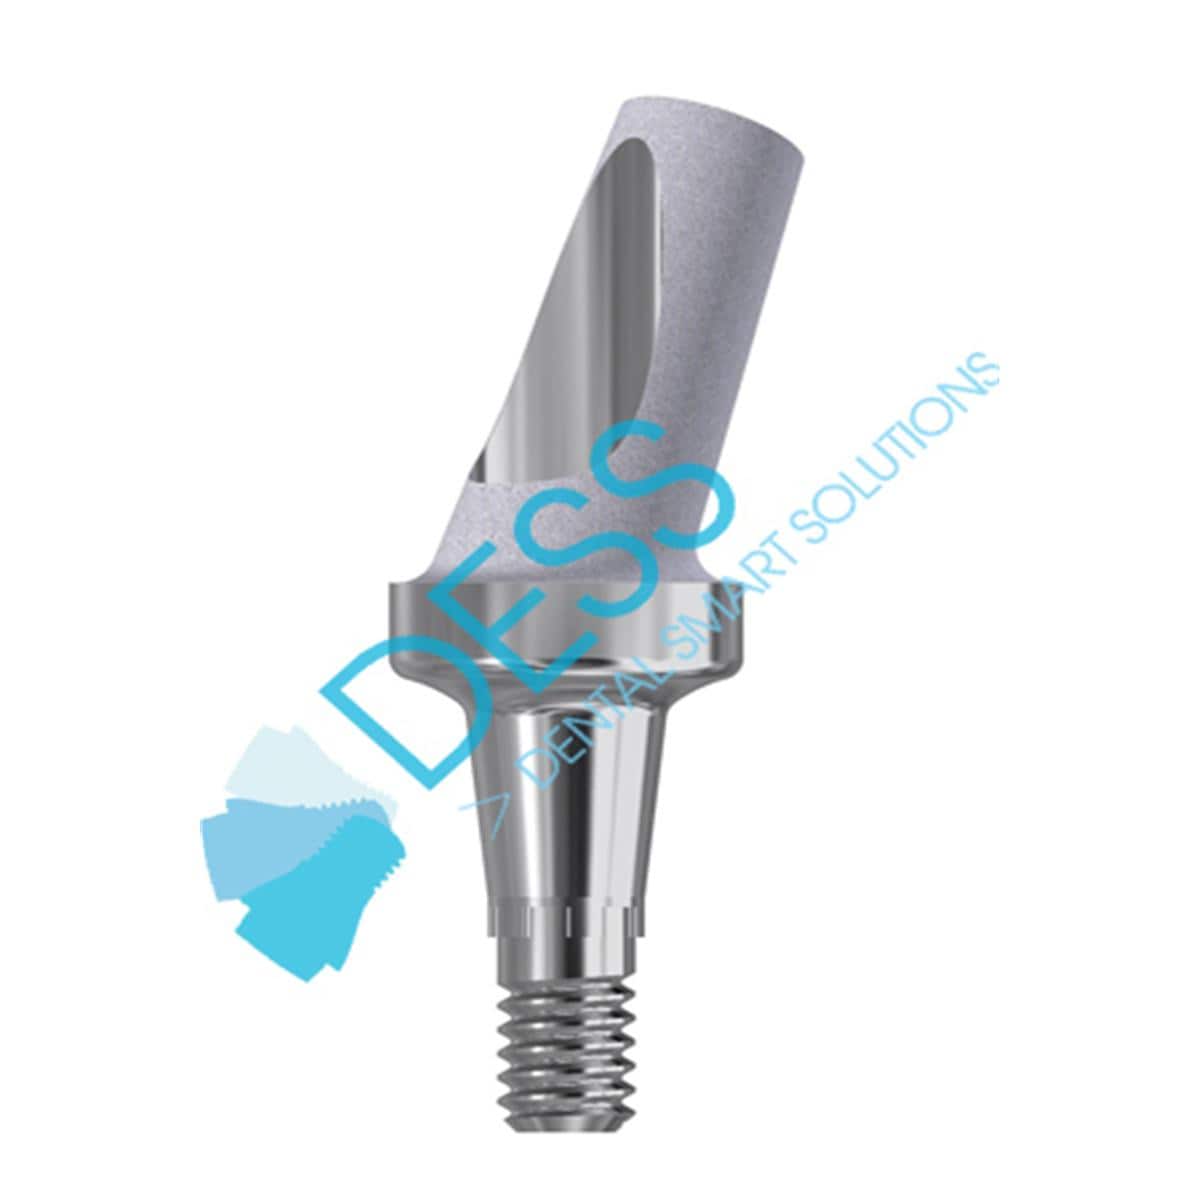 Titanabutment - kompatibel mit Dentsply Ankylos® - Höhe 1,5 mm, 25° gewinkelt, mit Rotationsschutz